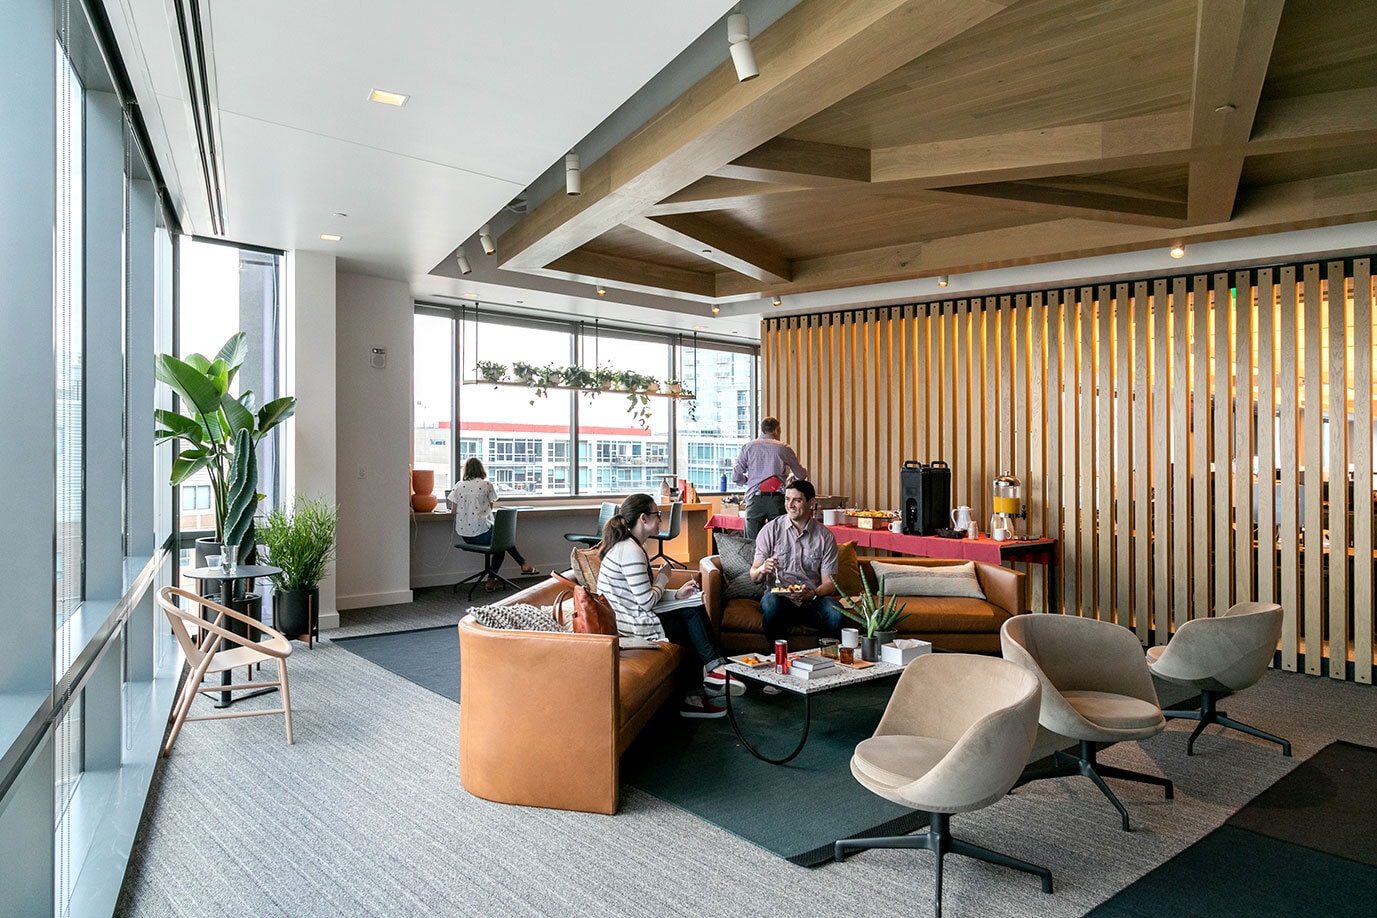 大きな窓と西海岸スタイルの木造建築が特徴的な開放的なオフィス空間。快適そうなソファで 2 人の従業員が休憩している。